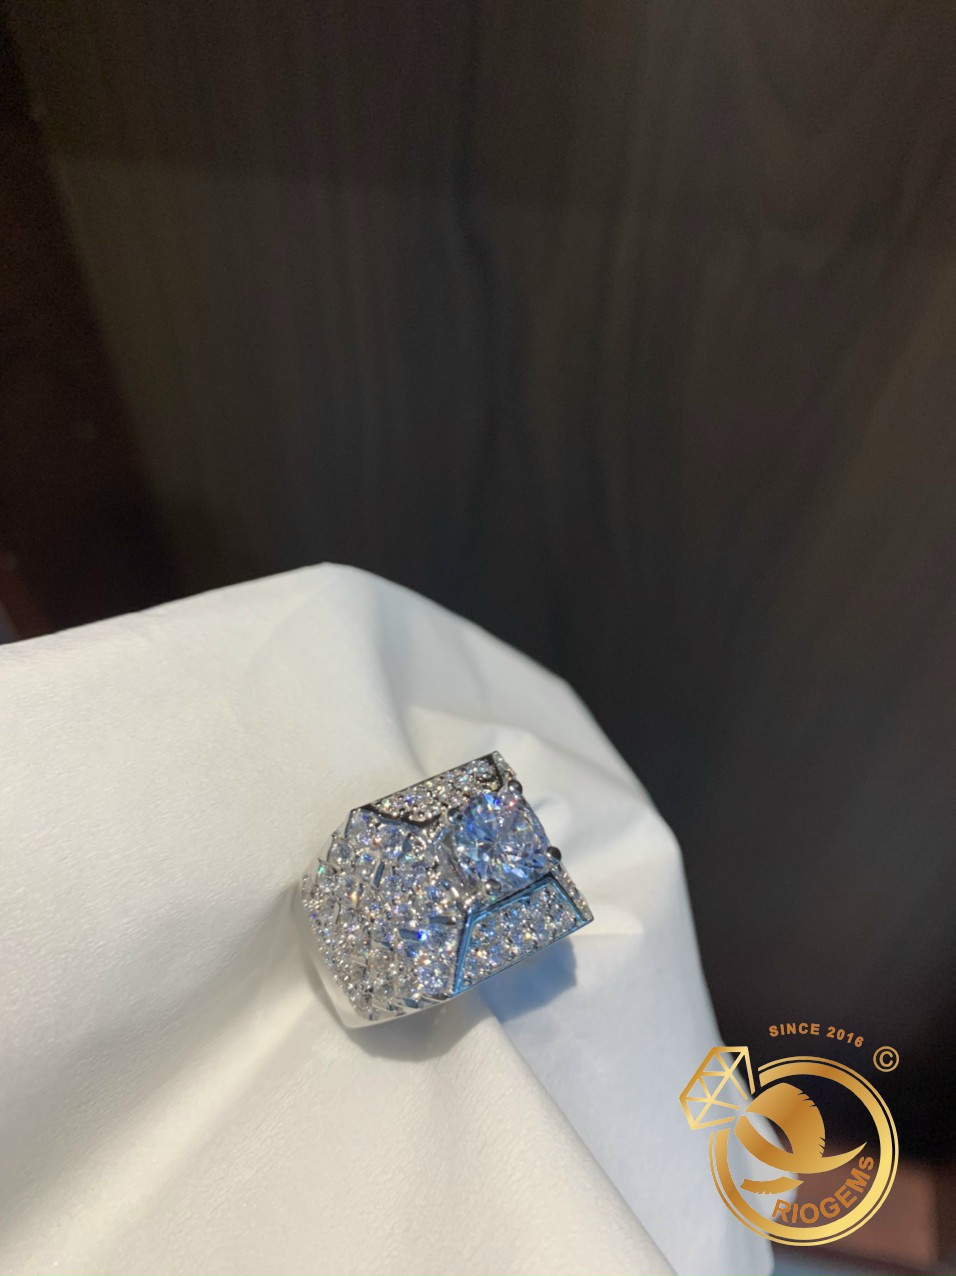 Nhẫn Kim cương nhân tạo đẹp từ RIOGEMs